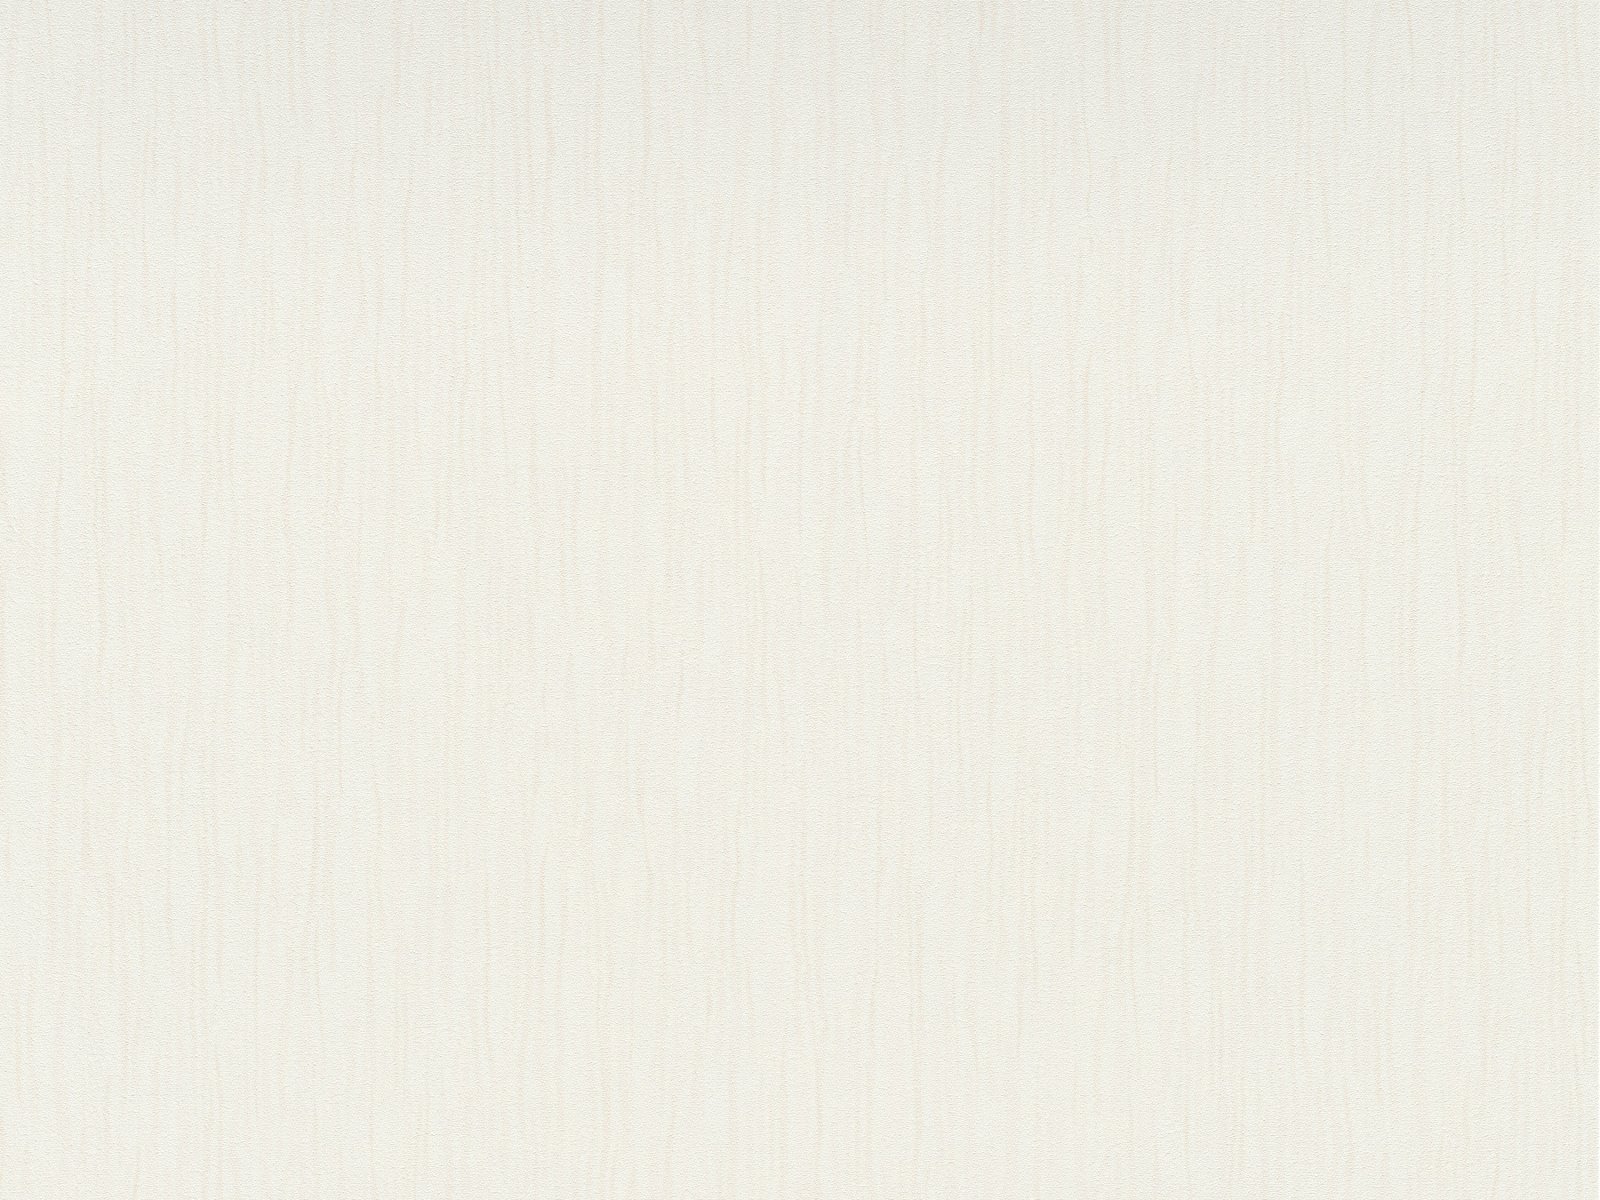 Vliesová tapeta vlnovkovitá s dekoratívnou textúrou s moaré efektom v béžovej farbe, ER-601815